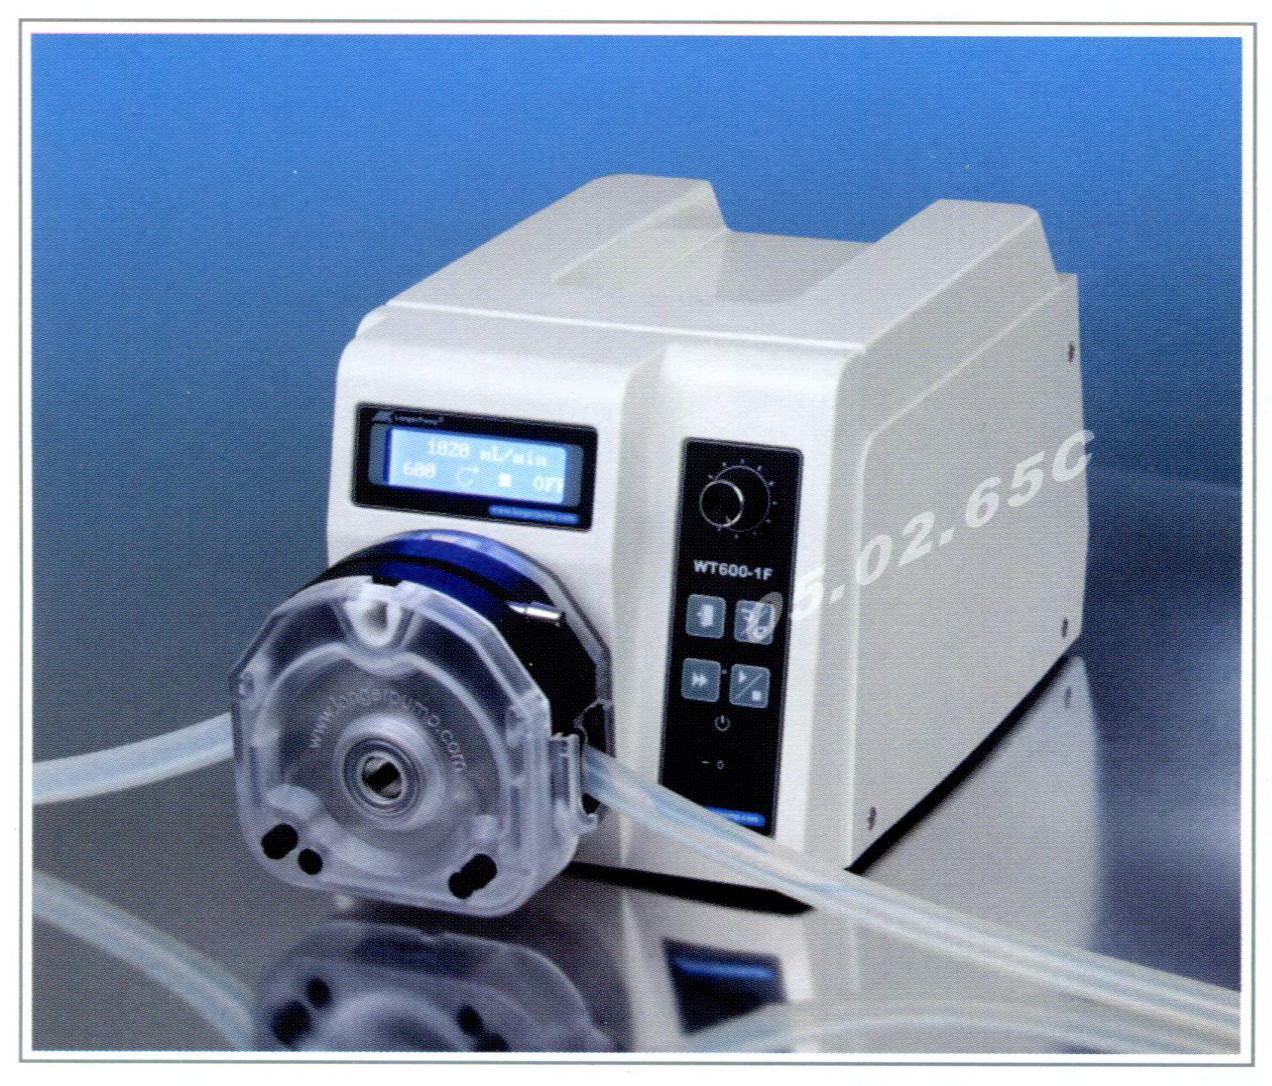 Longer pump, Peristaltic pump, WT600-1F